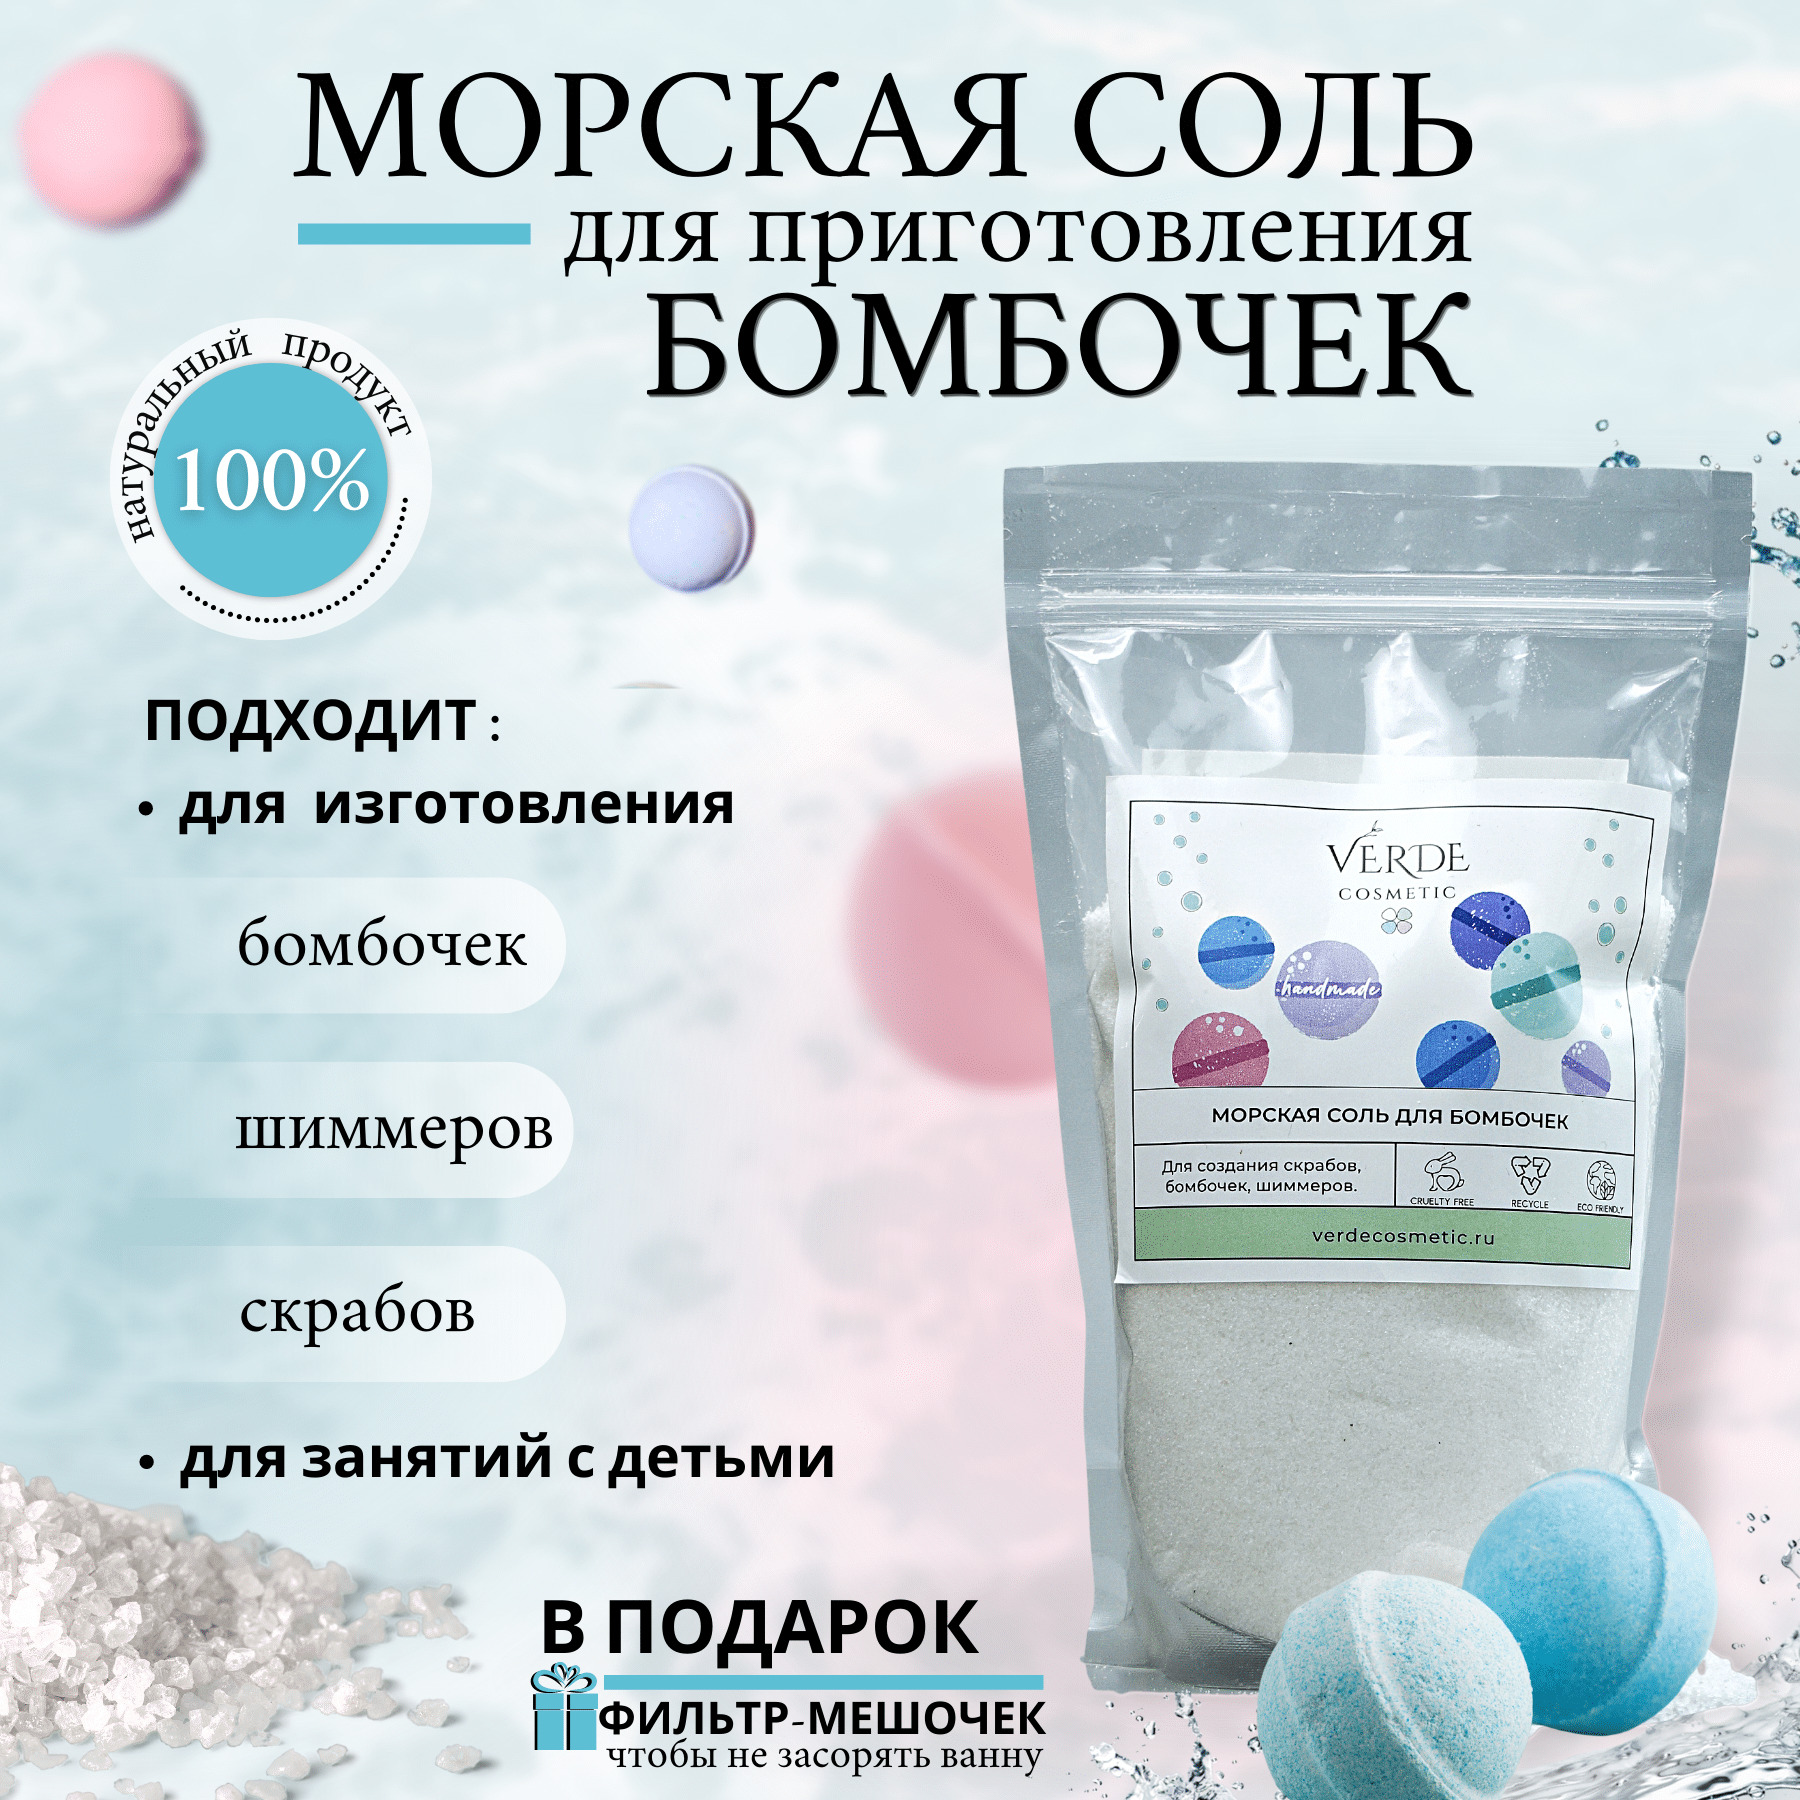 Ингредиенты для косметики купить компоненты в Украине